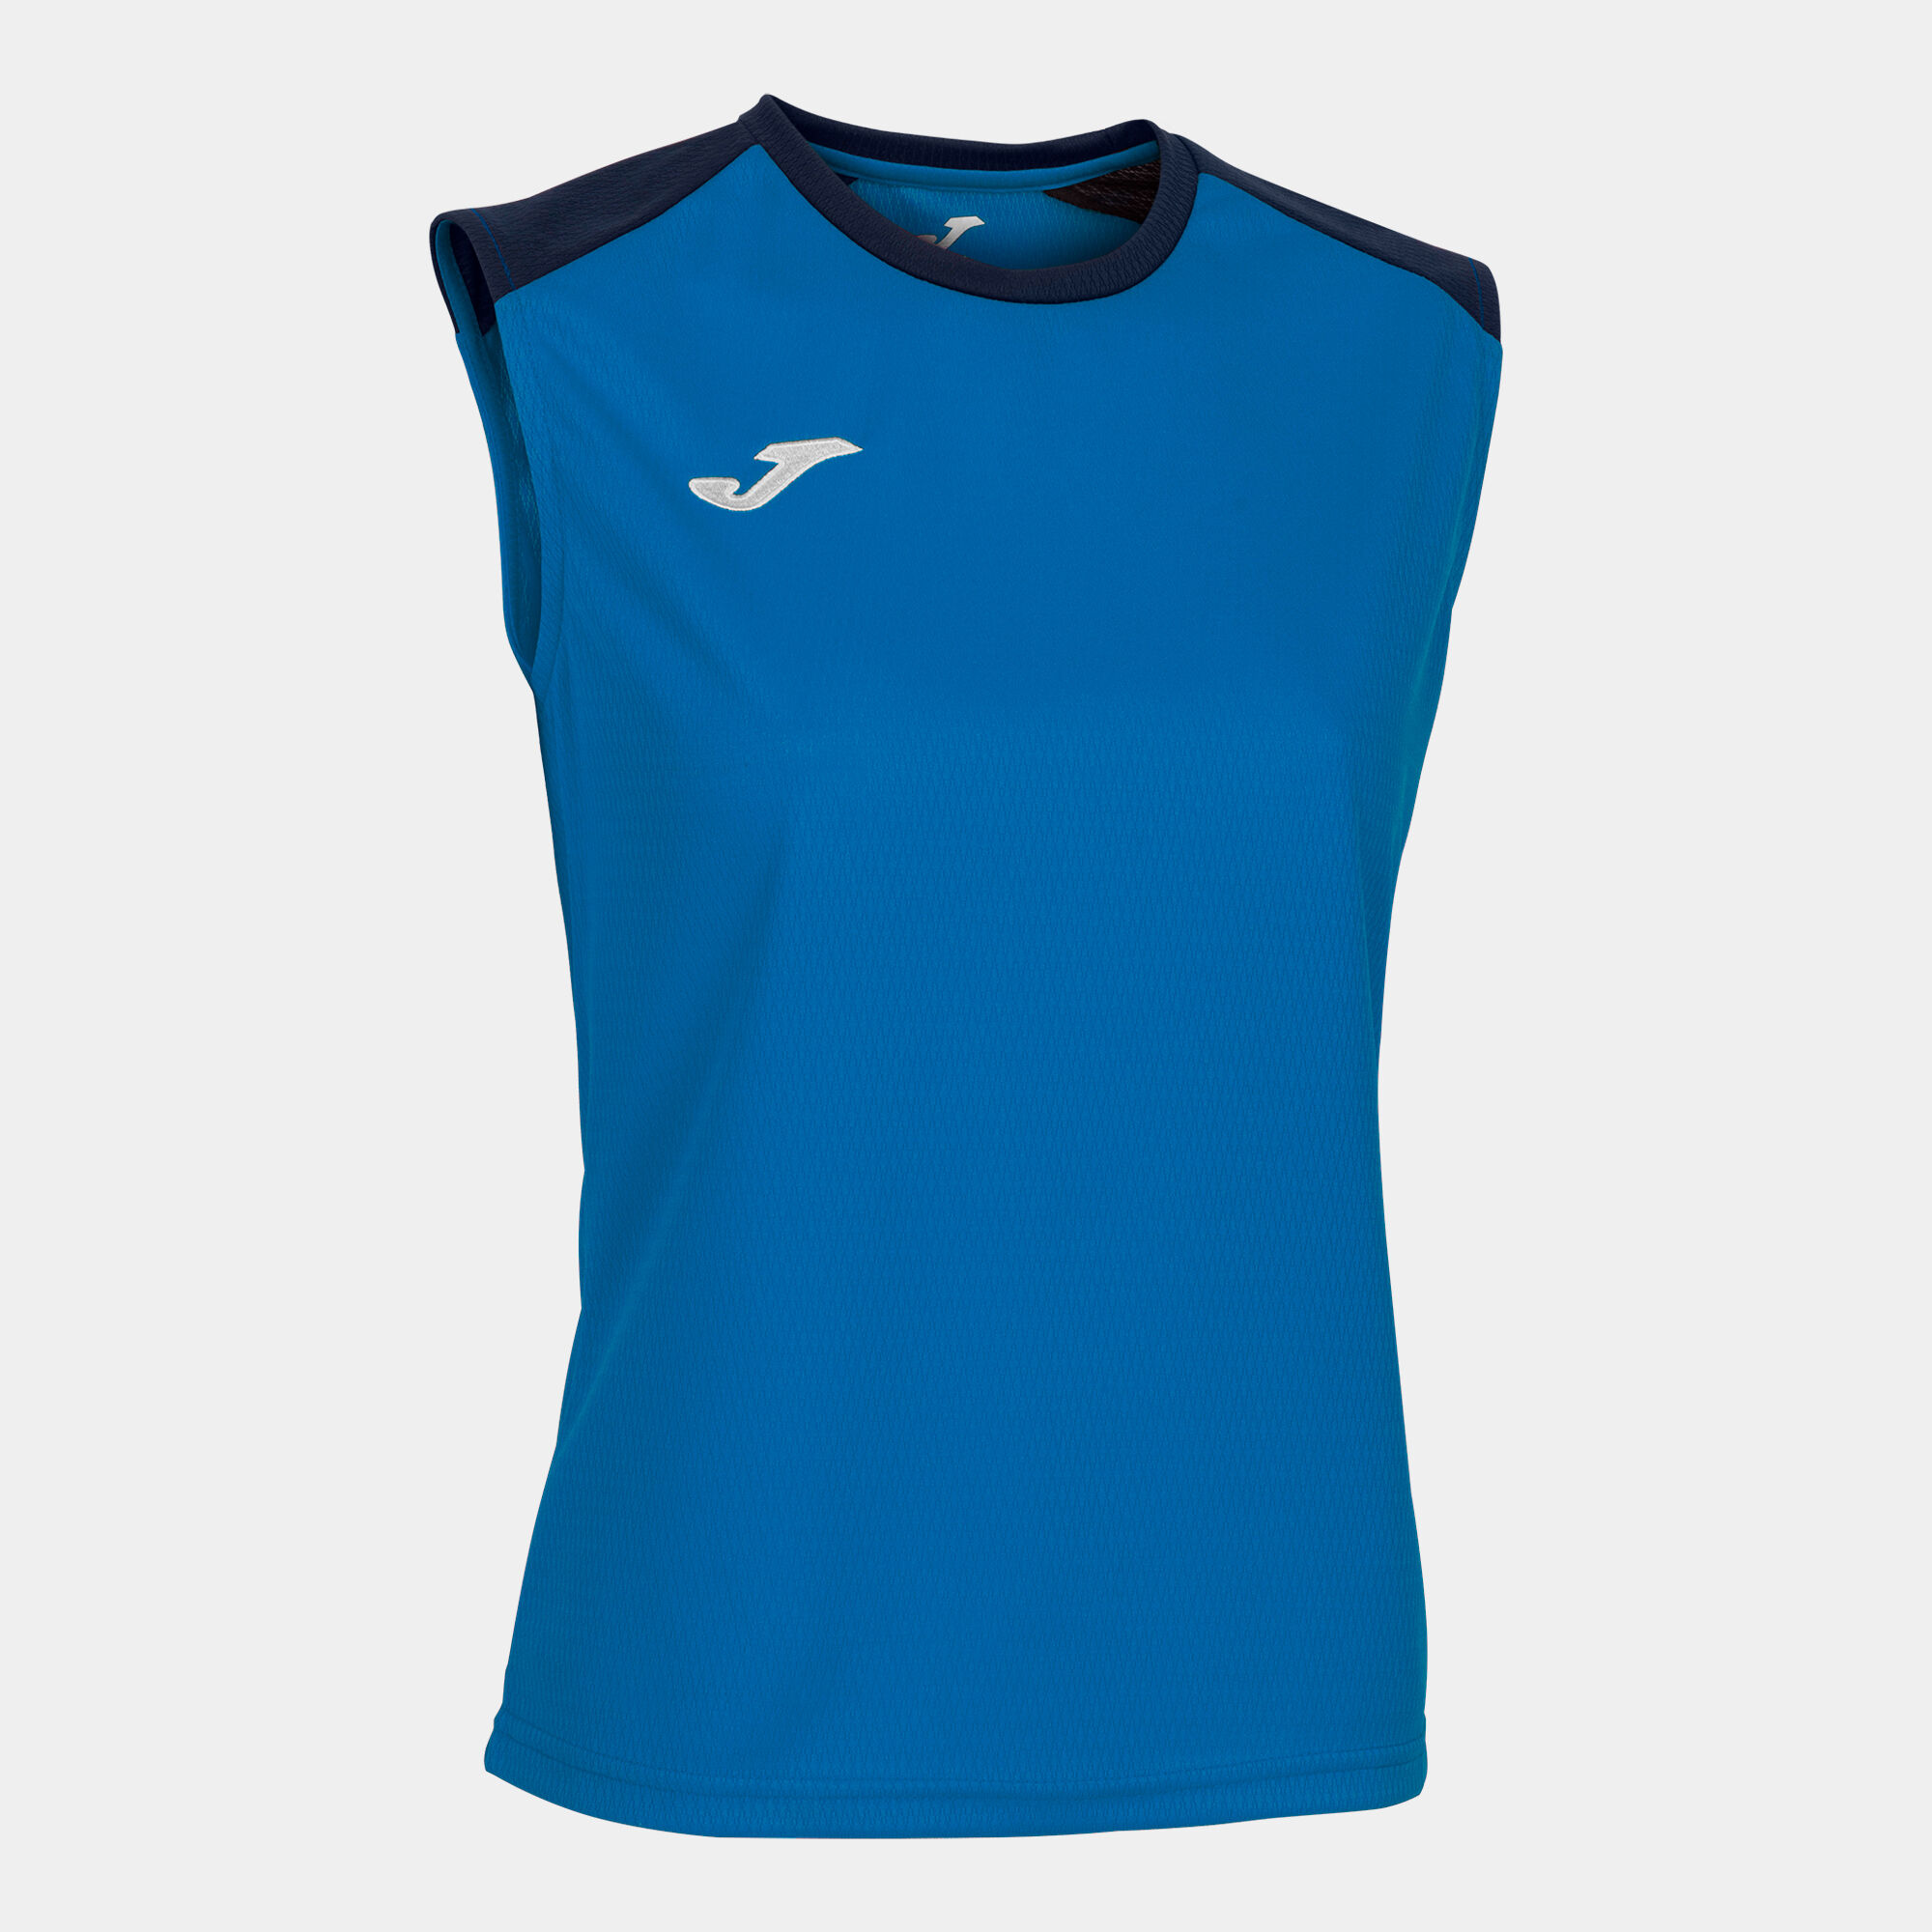 T-shirt de alça mulher Eco Championship azul royal azul marinho